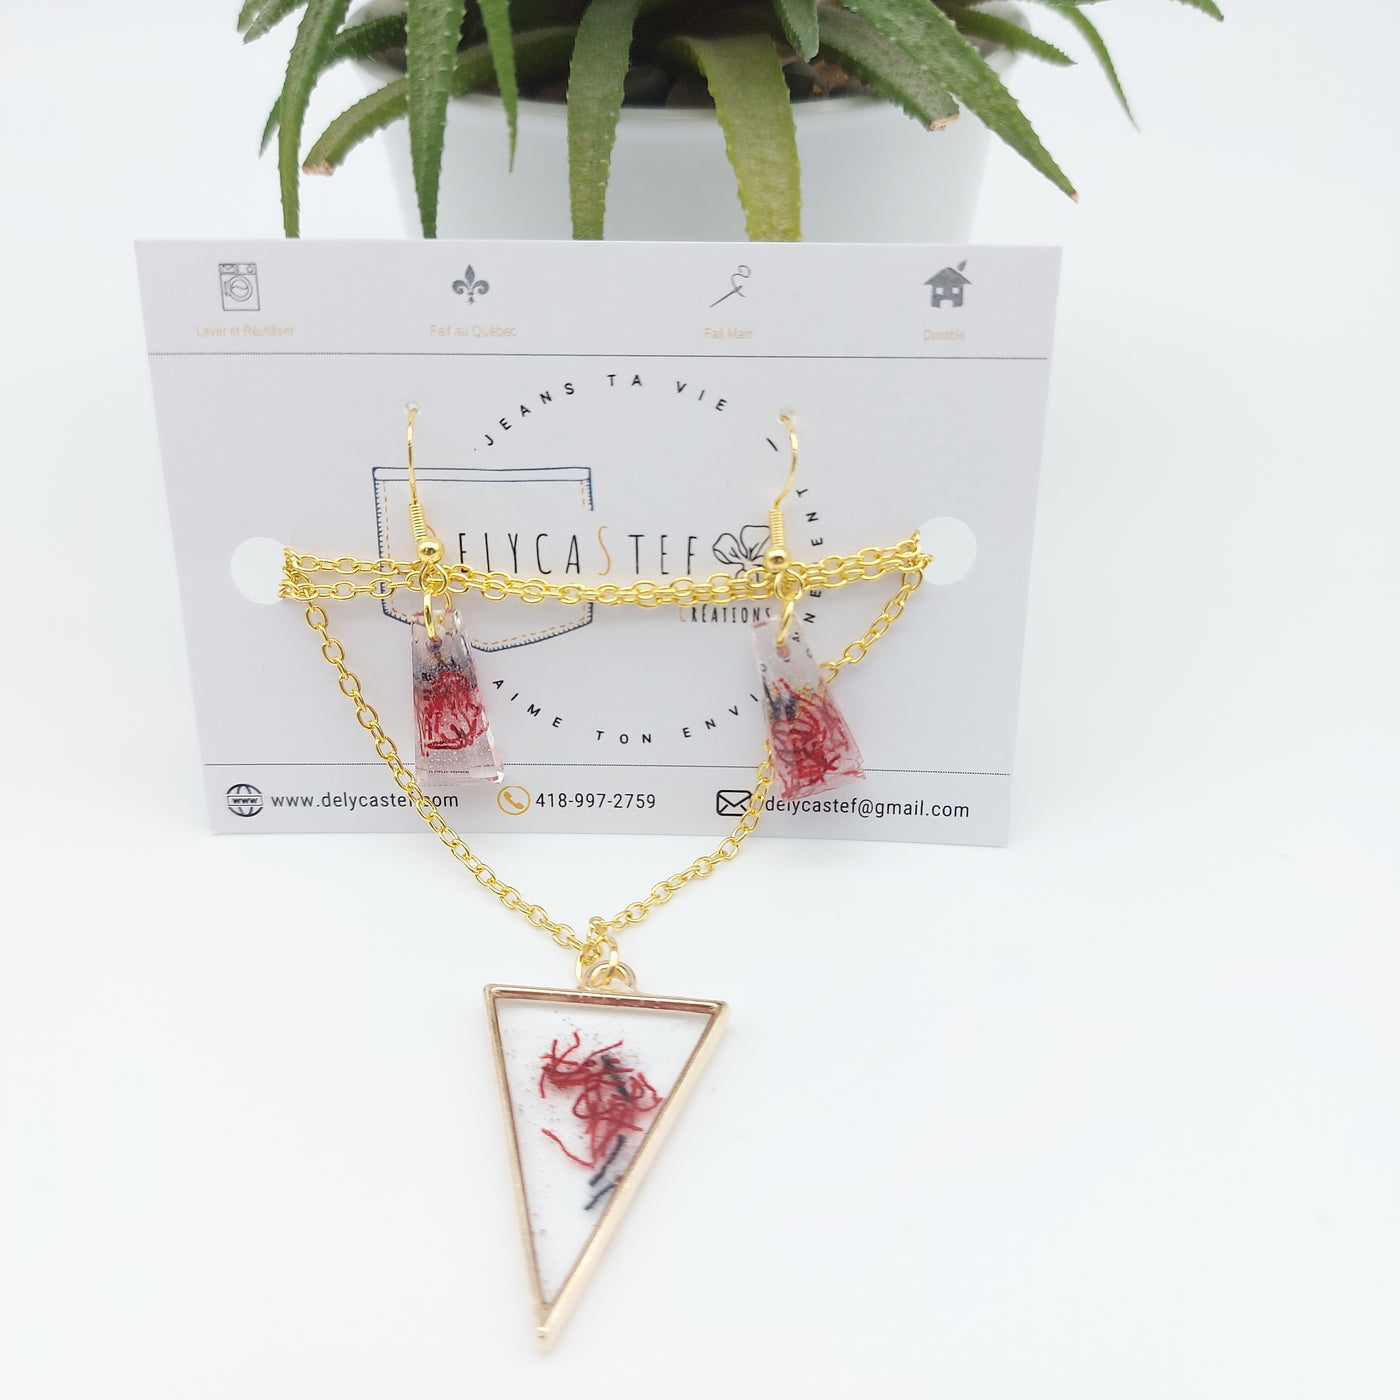 DelycaStef-parure collier boucles d’oreilles triangle trapèze  rouge denim